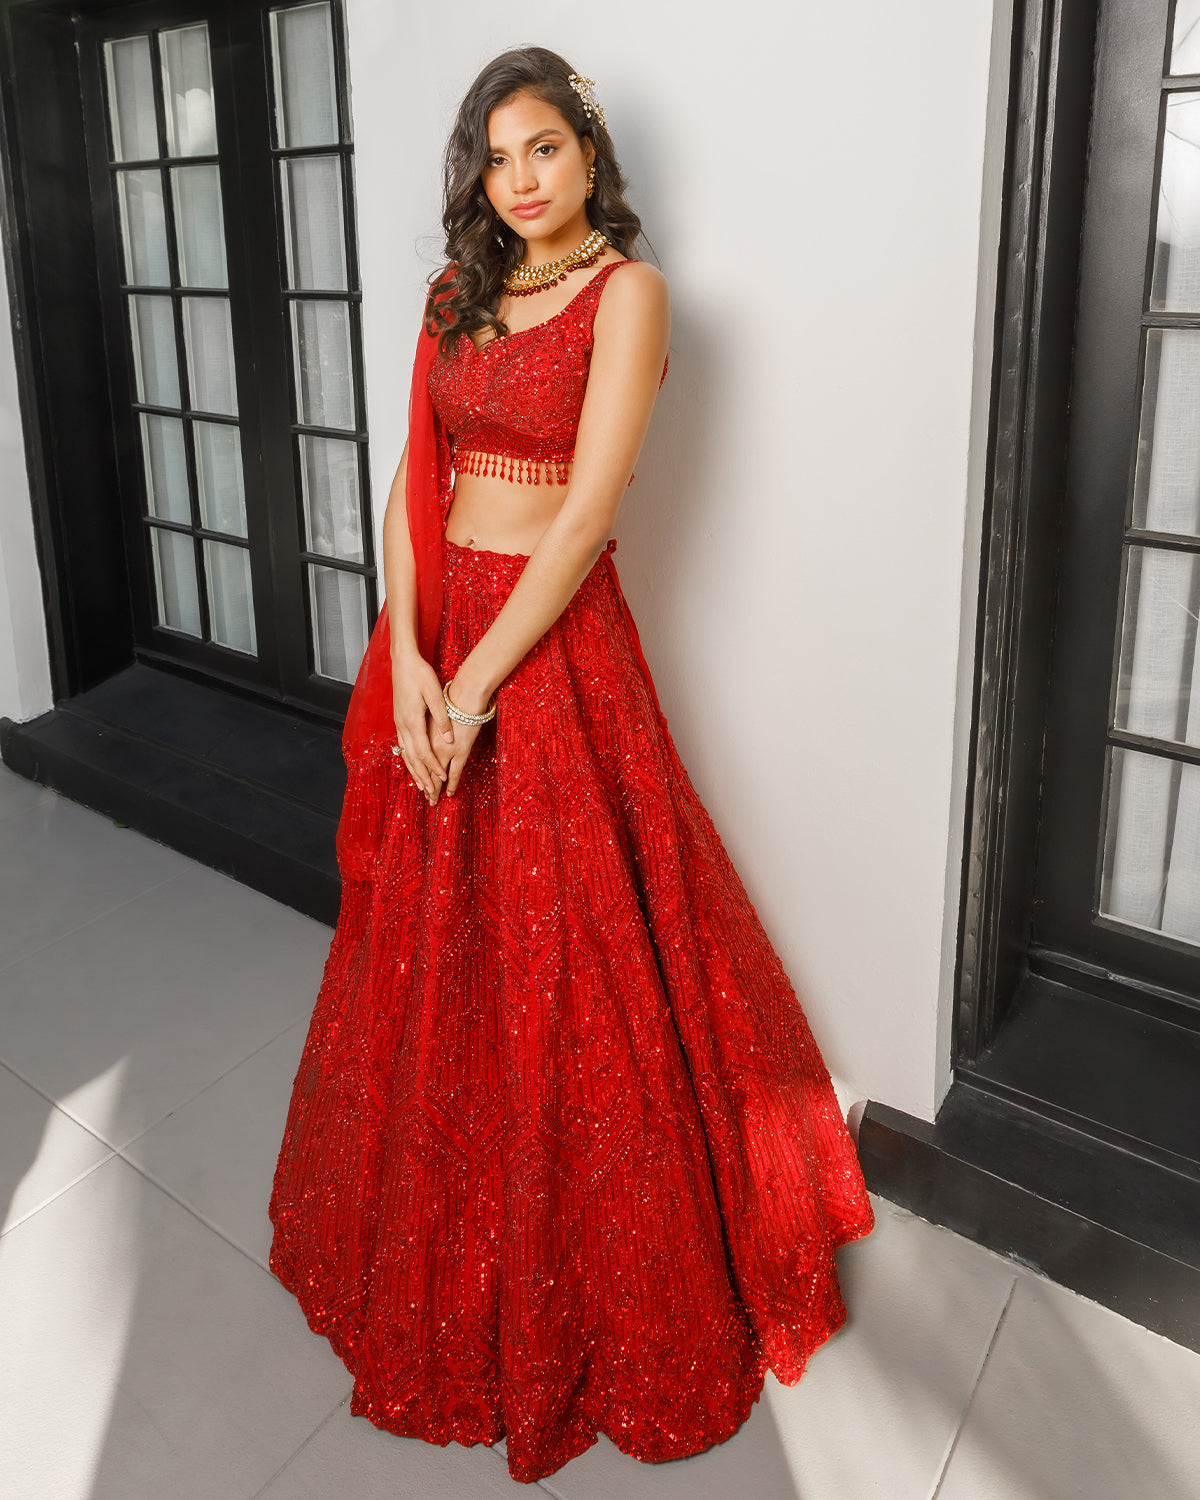 Tilsvarende mareridt Verdensrekord Guinness Book Ruby Red Glam Lehenga | Custom Indian Bridal Wear